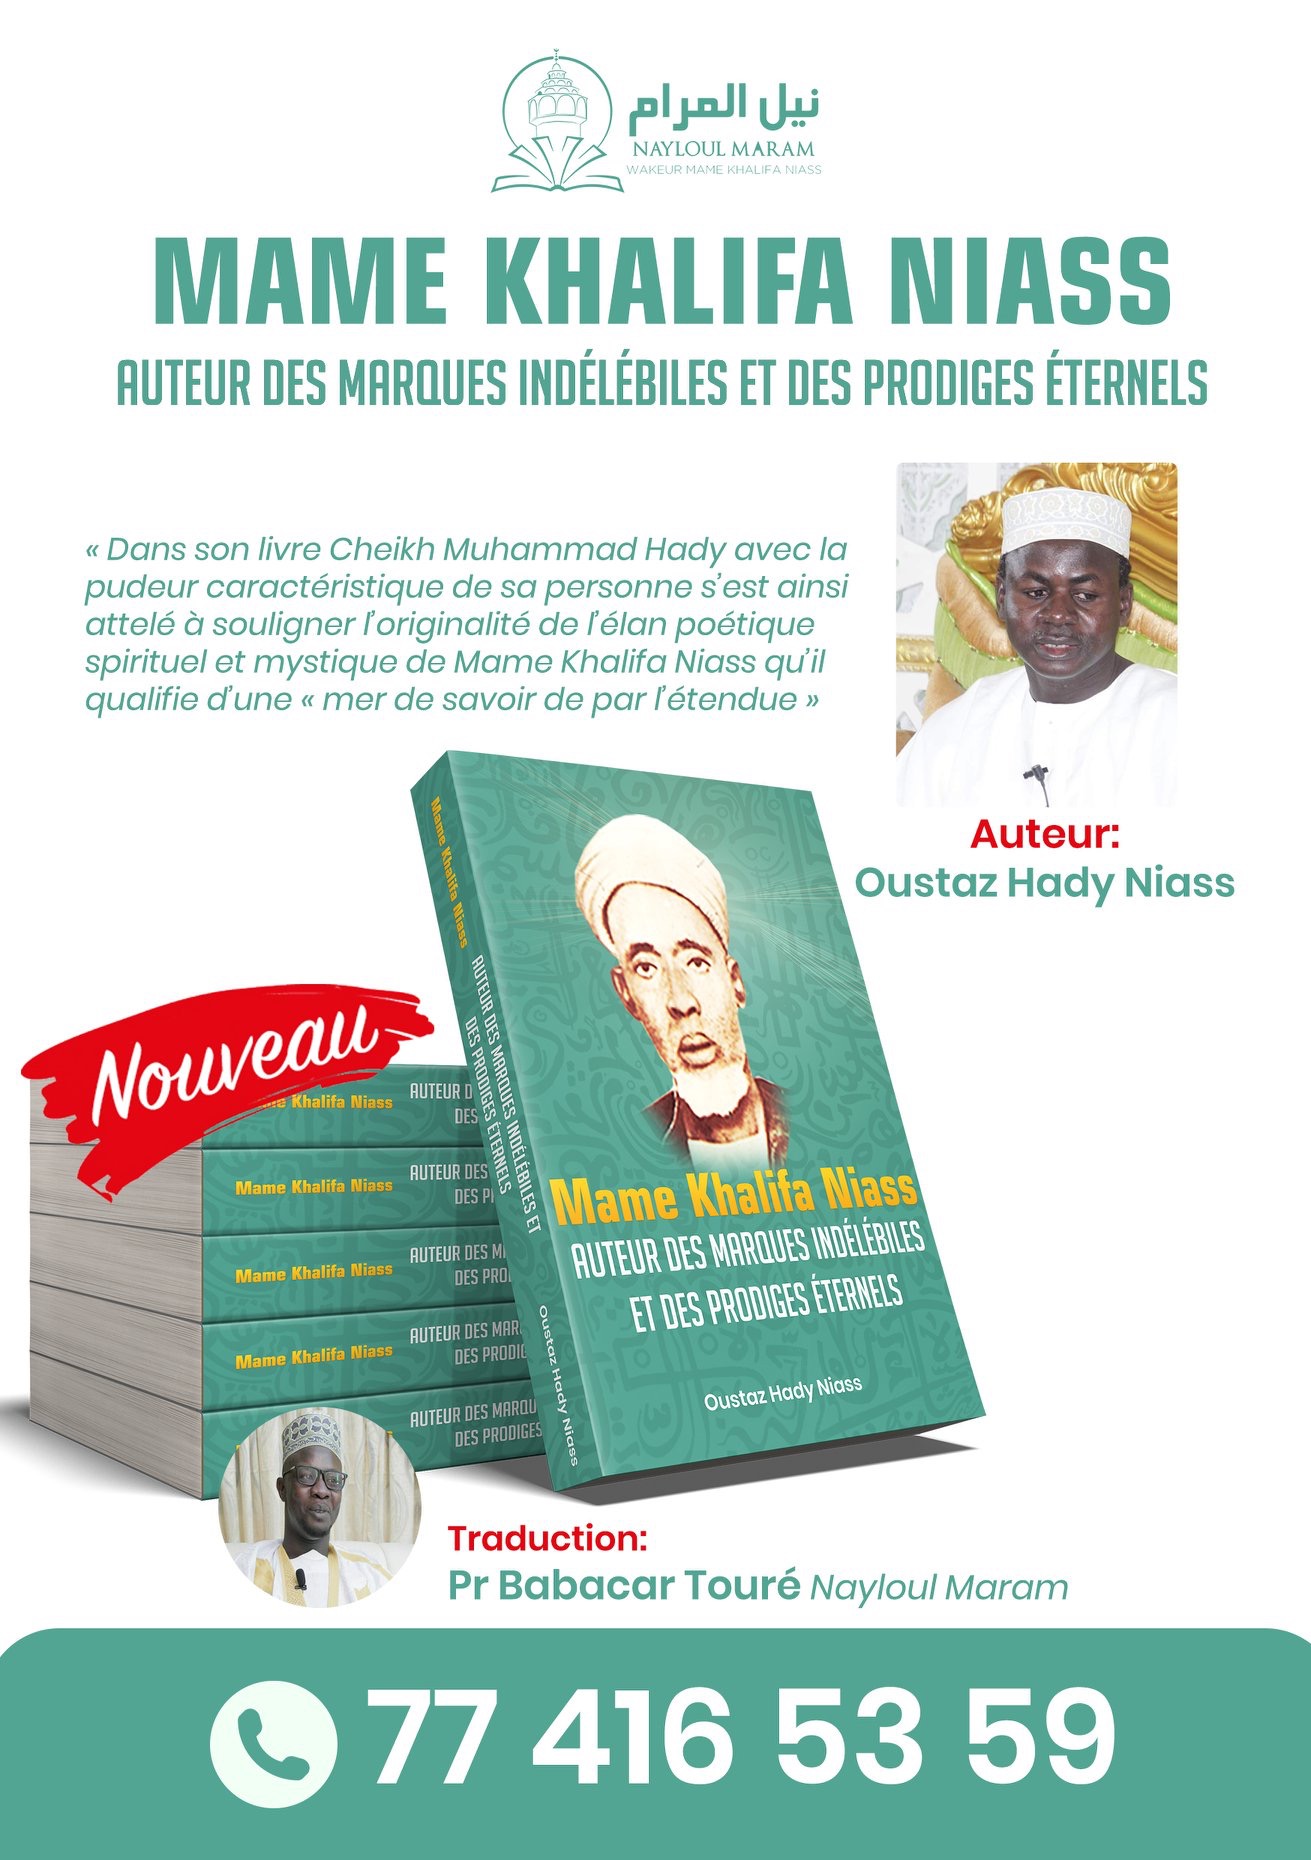 Nouvelle parution: Serigne Hady Niass publie son livre sur Mame Khalifa Niass